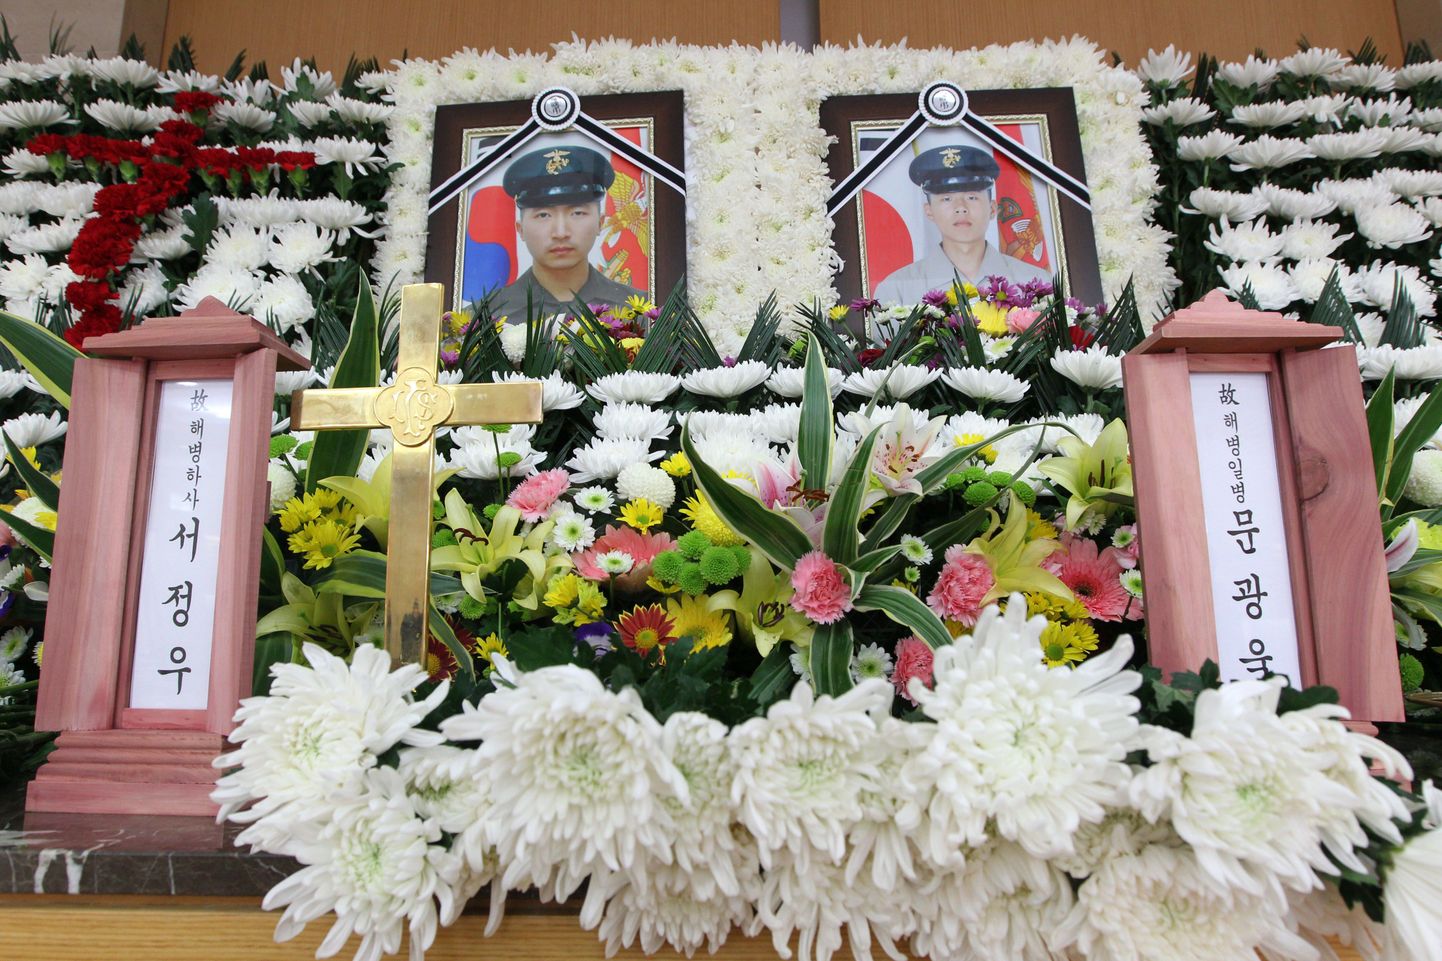 Inimesed asetasid lilli ja avaldasid austust langenud Seo Jeong-Woo´le ja Moon Gwang-Wook´ile.